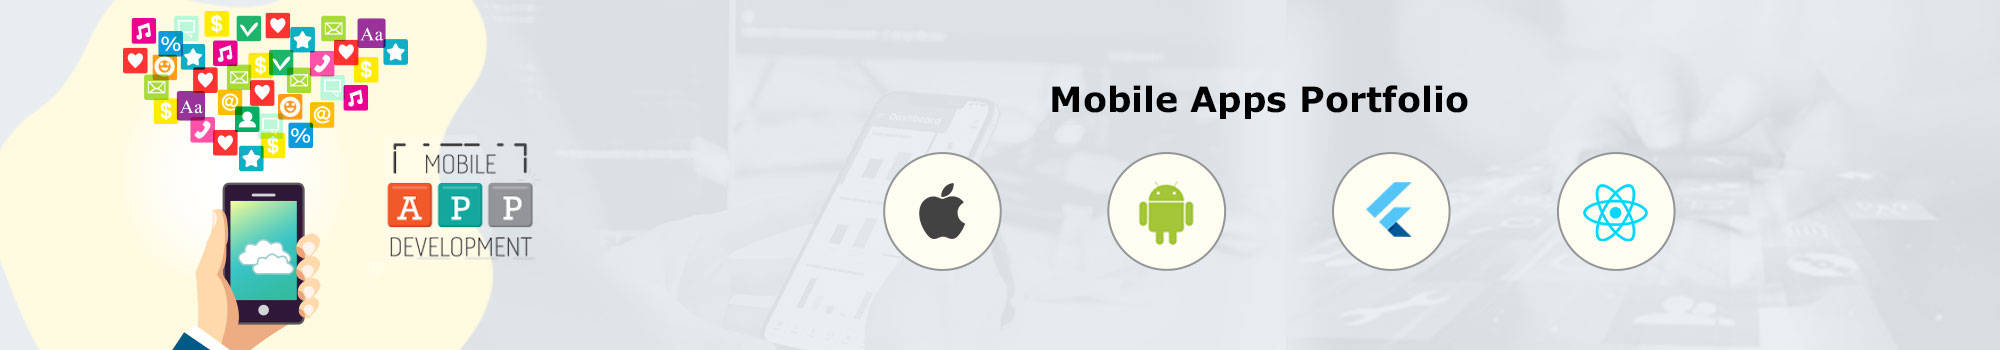 Mobile App Portfolio